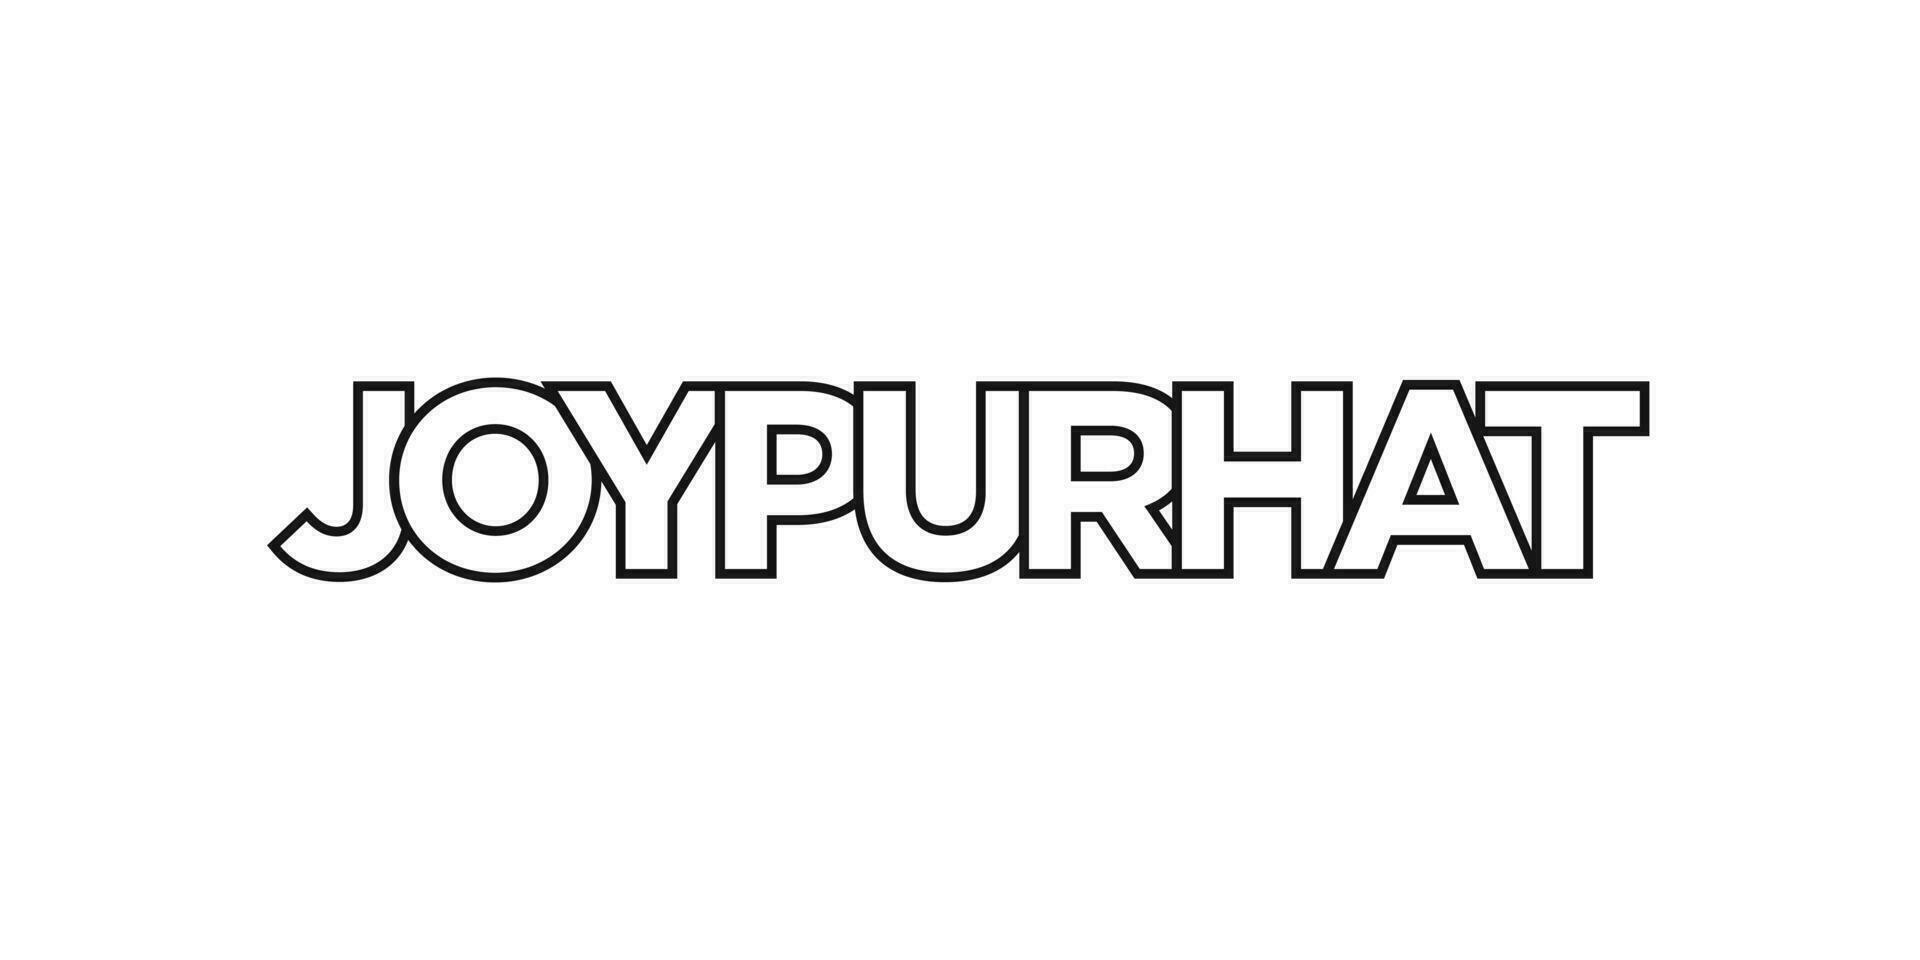 joypurhat nel il bangladesh emblema. il design Caratteristiche un' geometrico stile, vettore illustrazione con grassetto tipografia nel un' moderno font. il grafico slogan scritta.